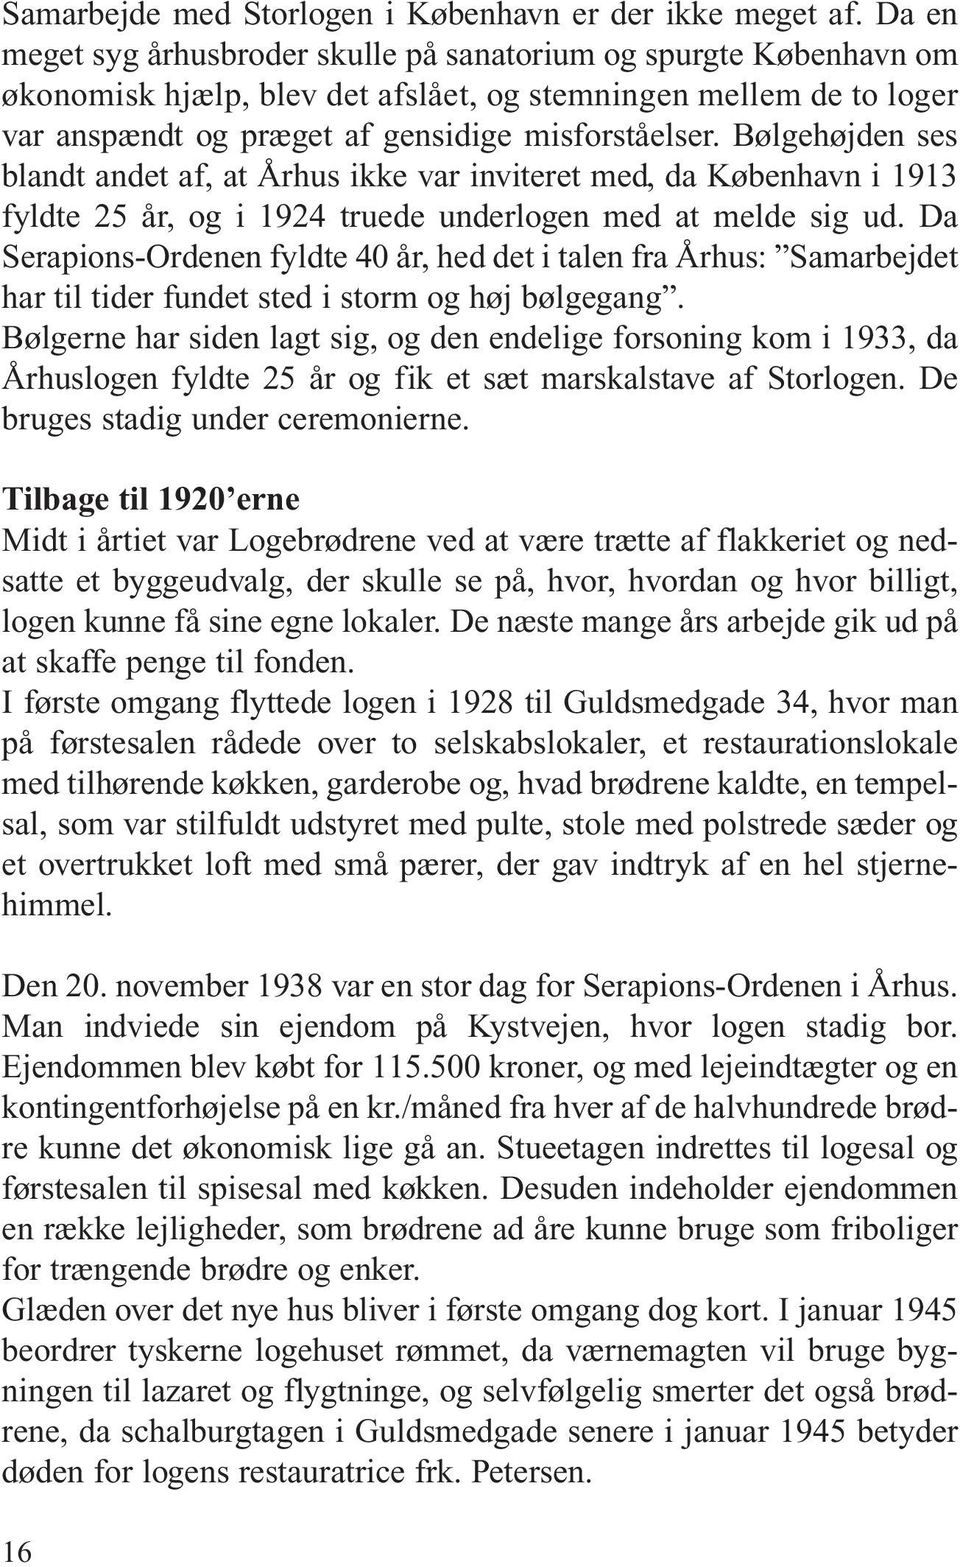 Bølgehøjden ses blandt andet af, at Århus ikke var inviteret med, da København i 1913 fyldte 25 år, og i 1924 truede underlogen med at melde sig ud.